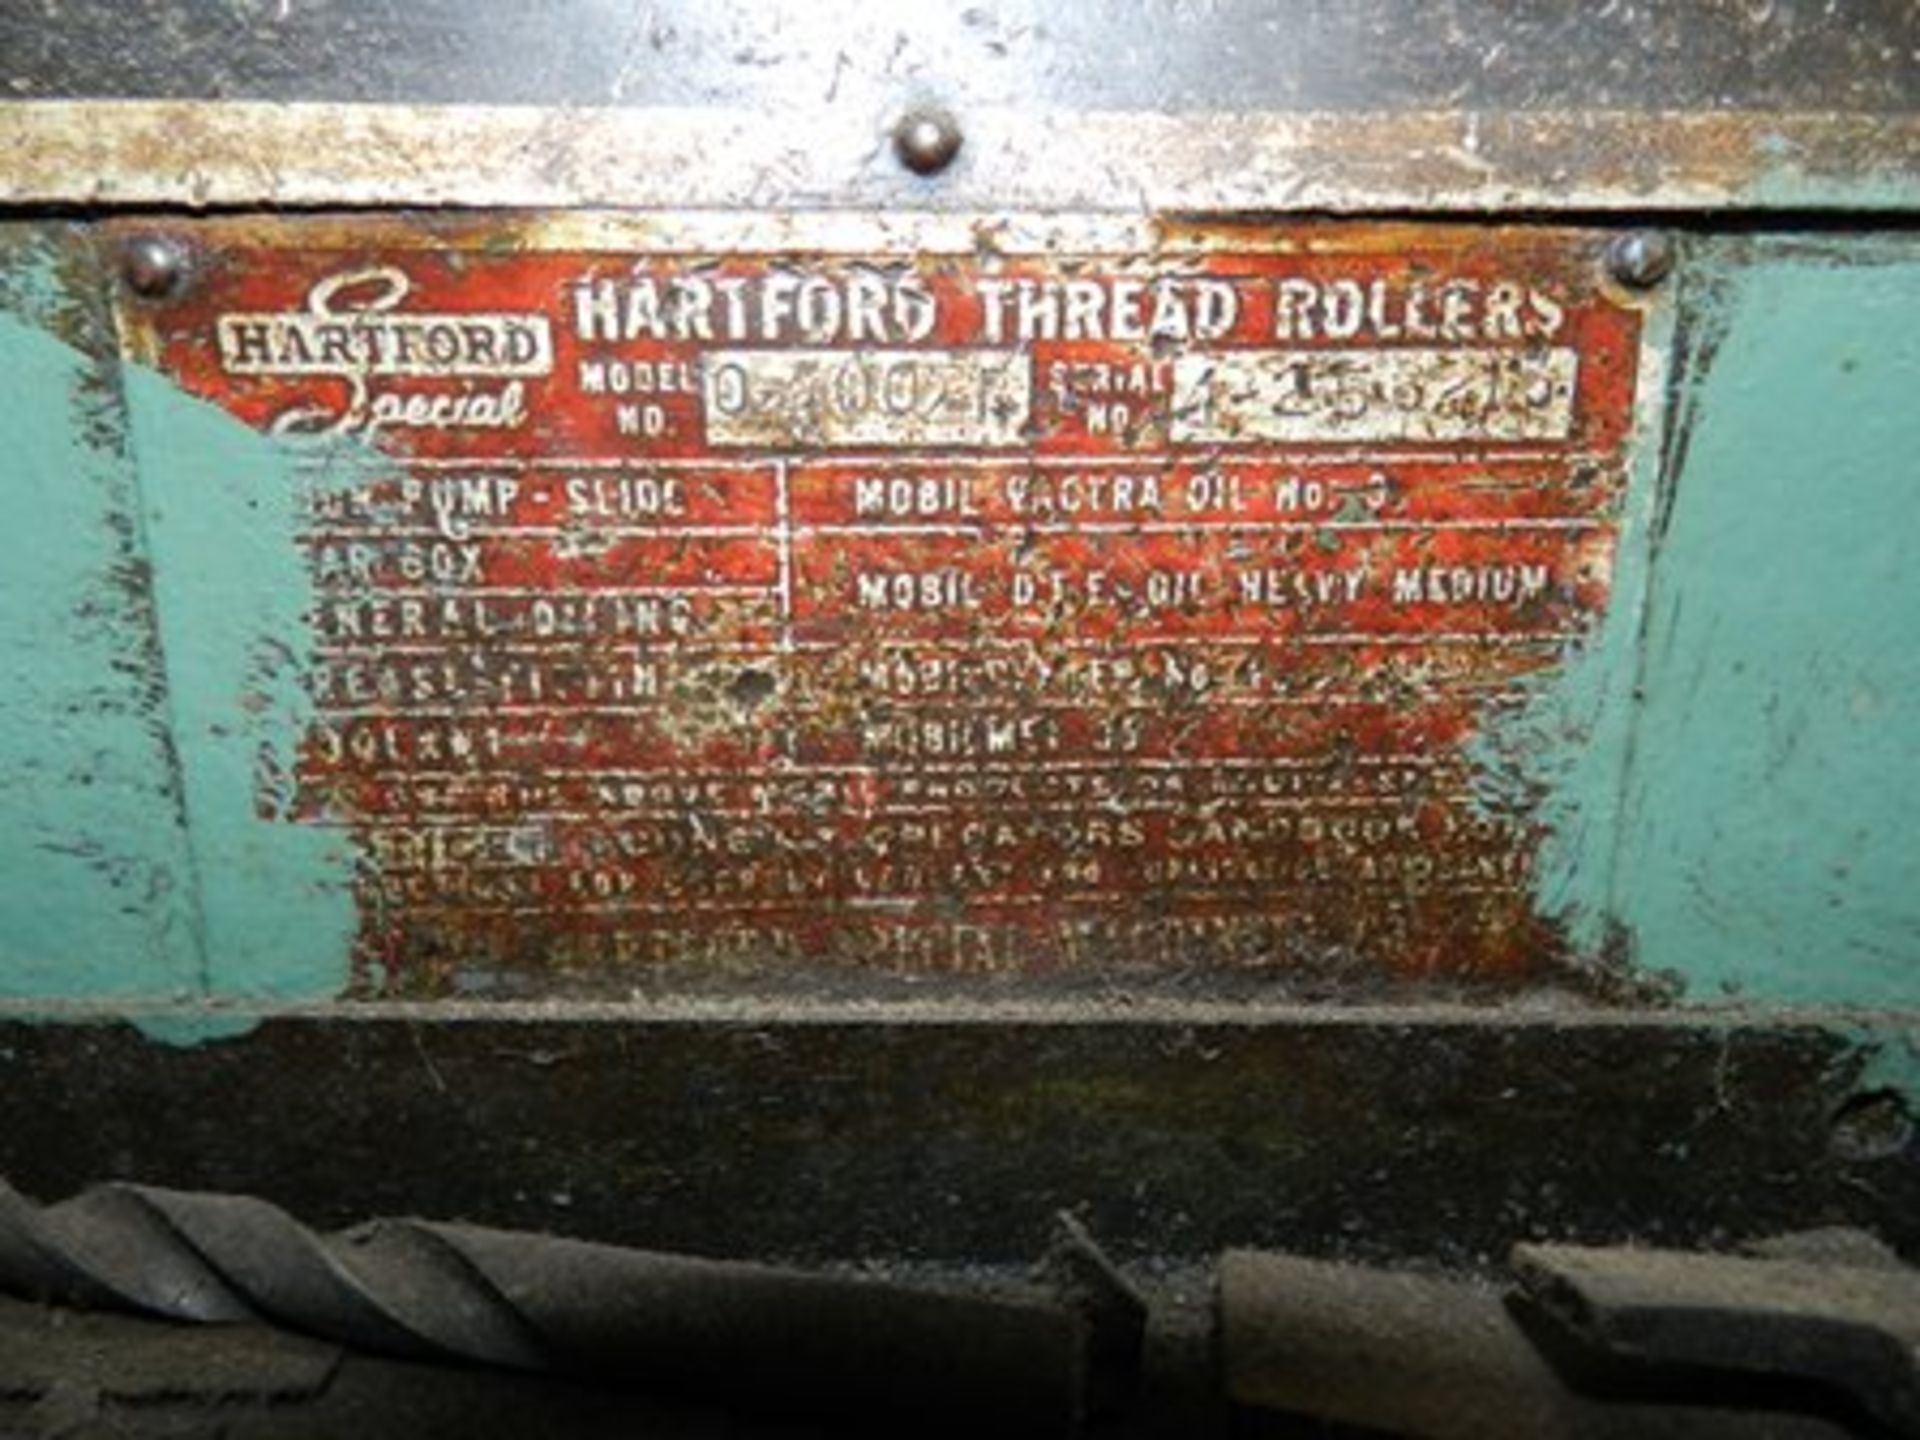 Máquina roladora de tornillos marca Hartford modelo 0-400 serie 4-256-13 - Image 7 of 13